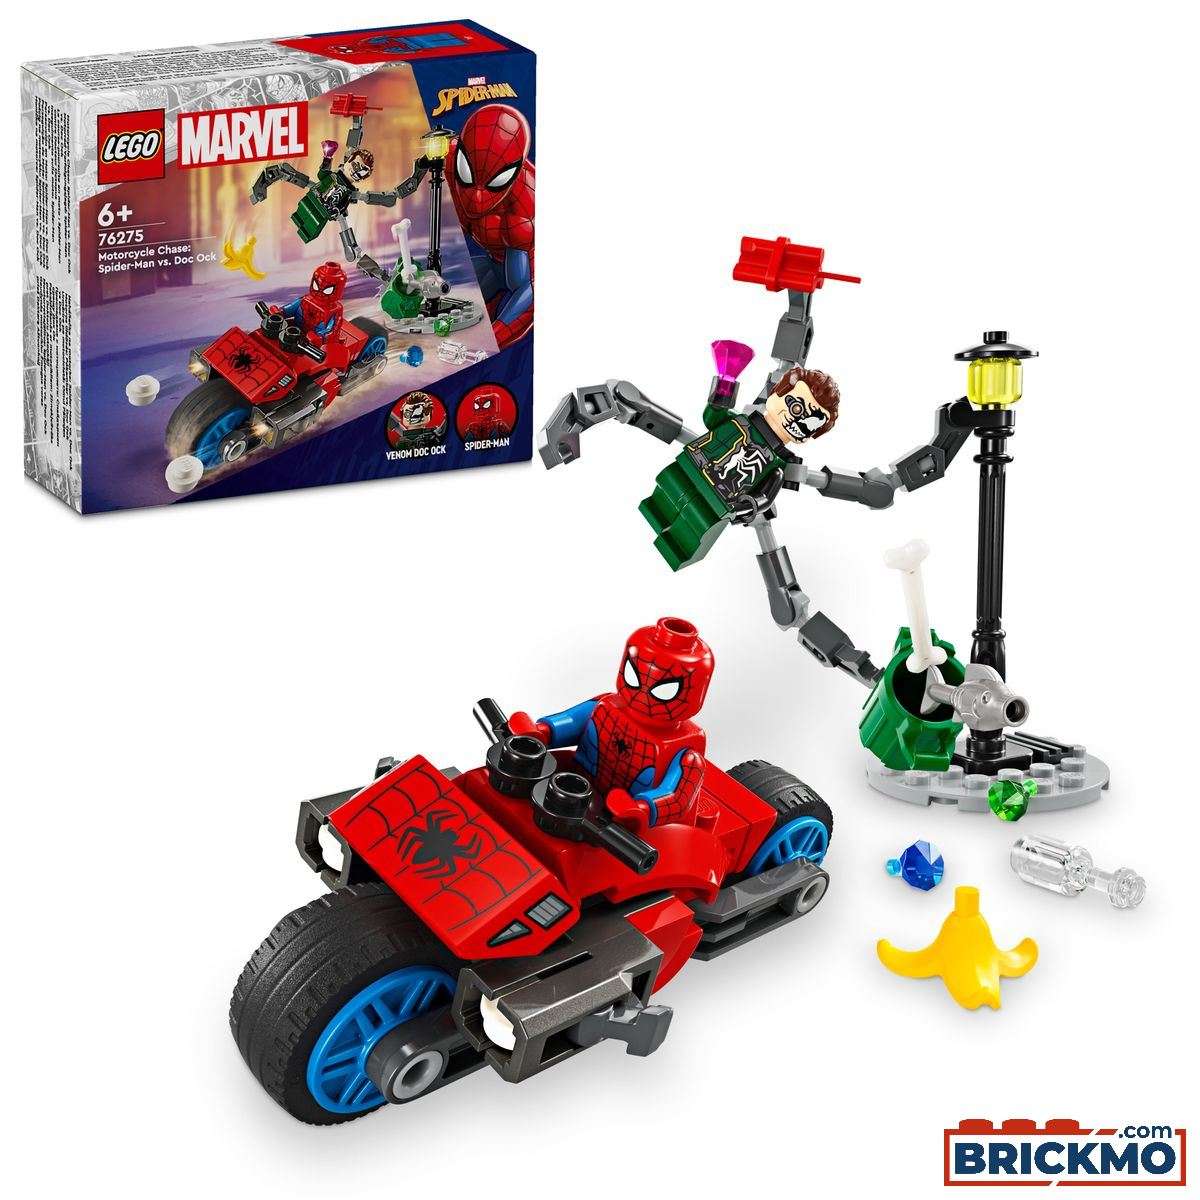 LEGO Marvel Super Heroes 76275 Persecución en Moto: Spider-Man vs. Doc Ock 76275